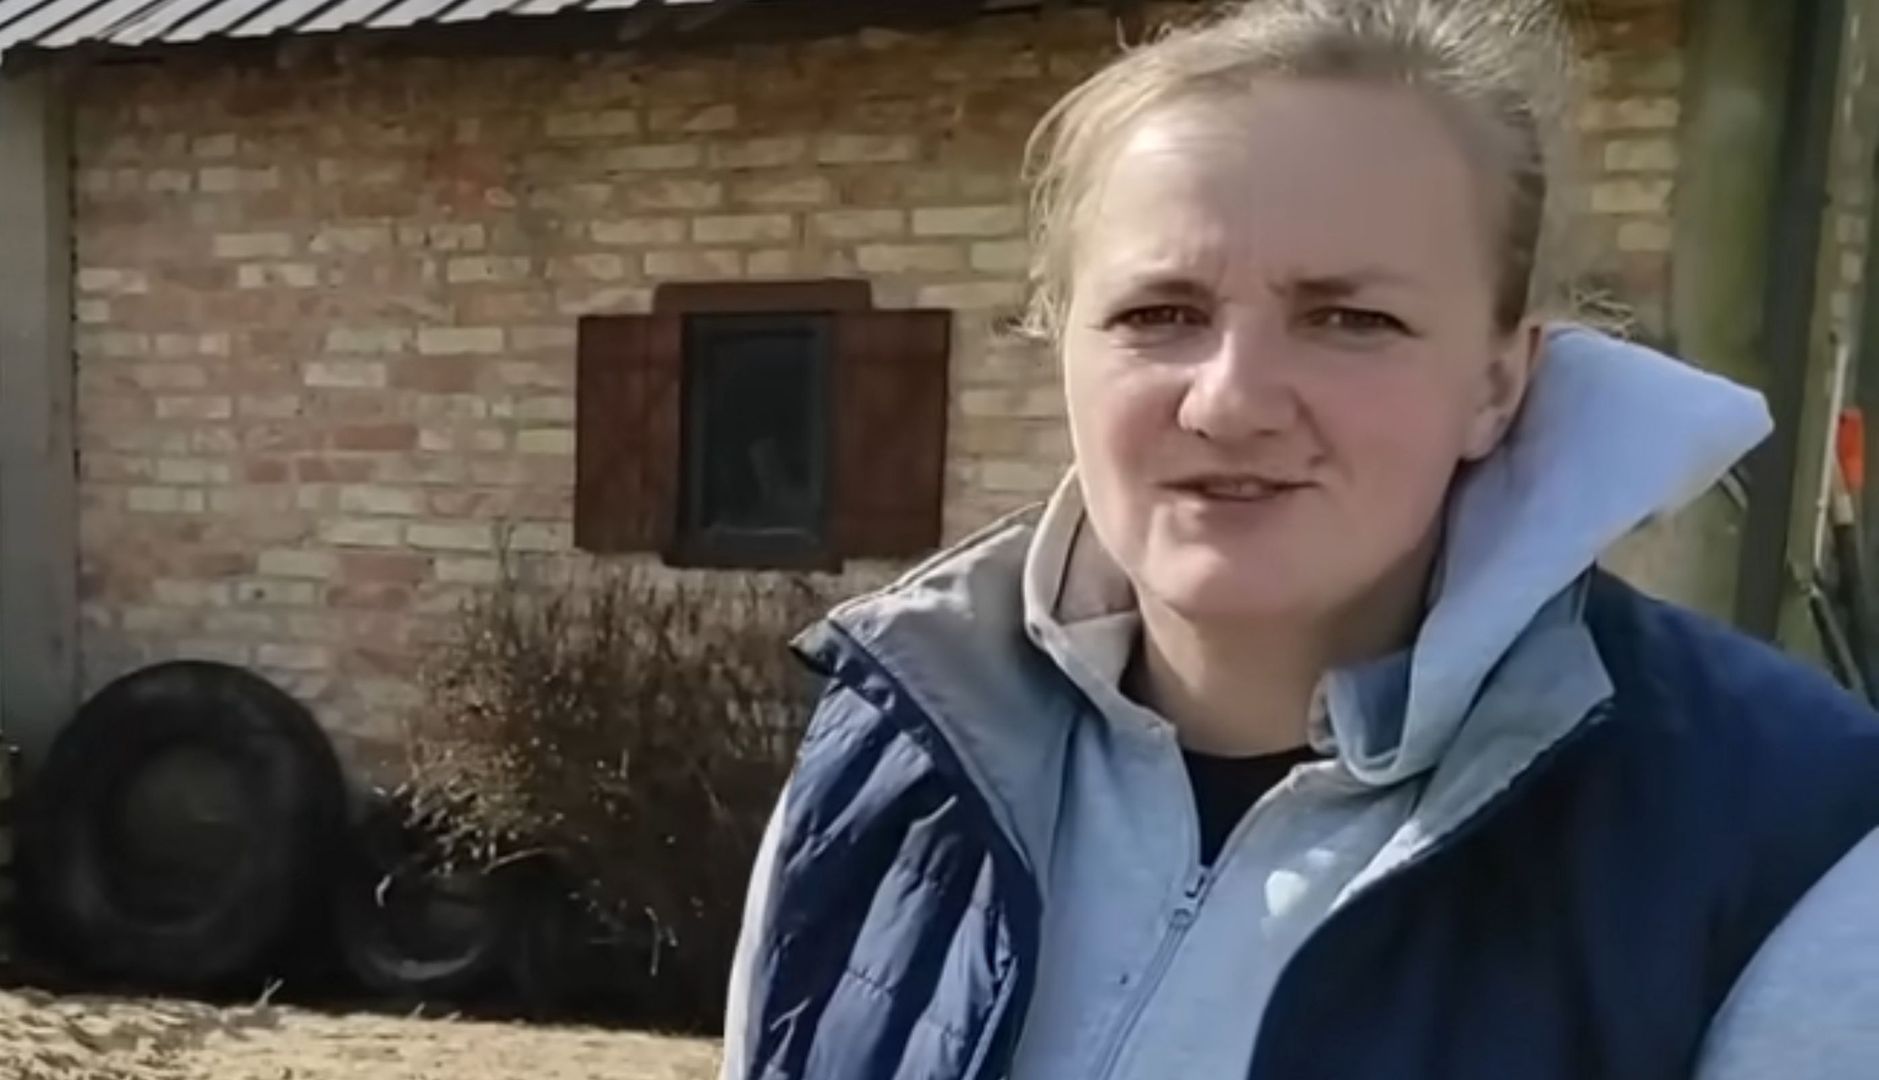 Rolniczka z Podlasia otrzymała bardzo przykrą wiadomość. Co za czasy